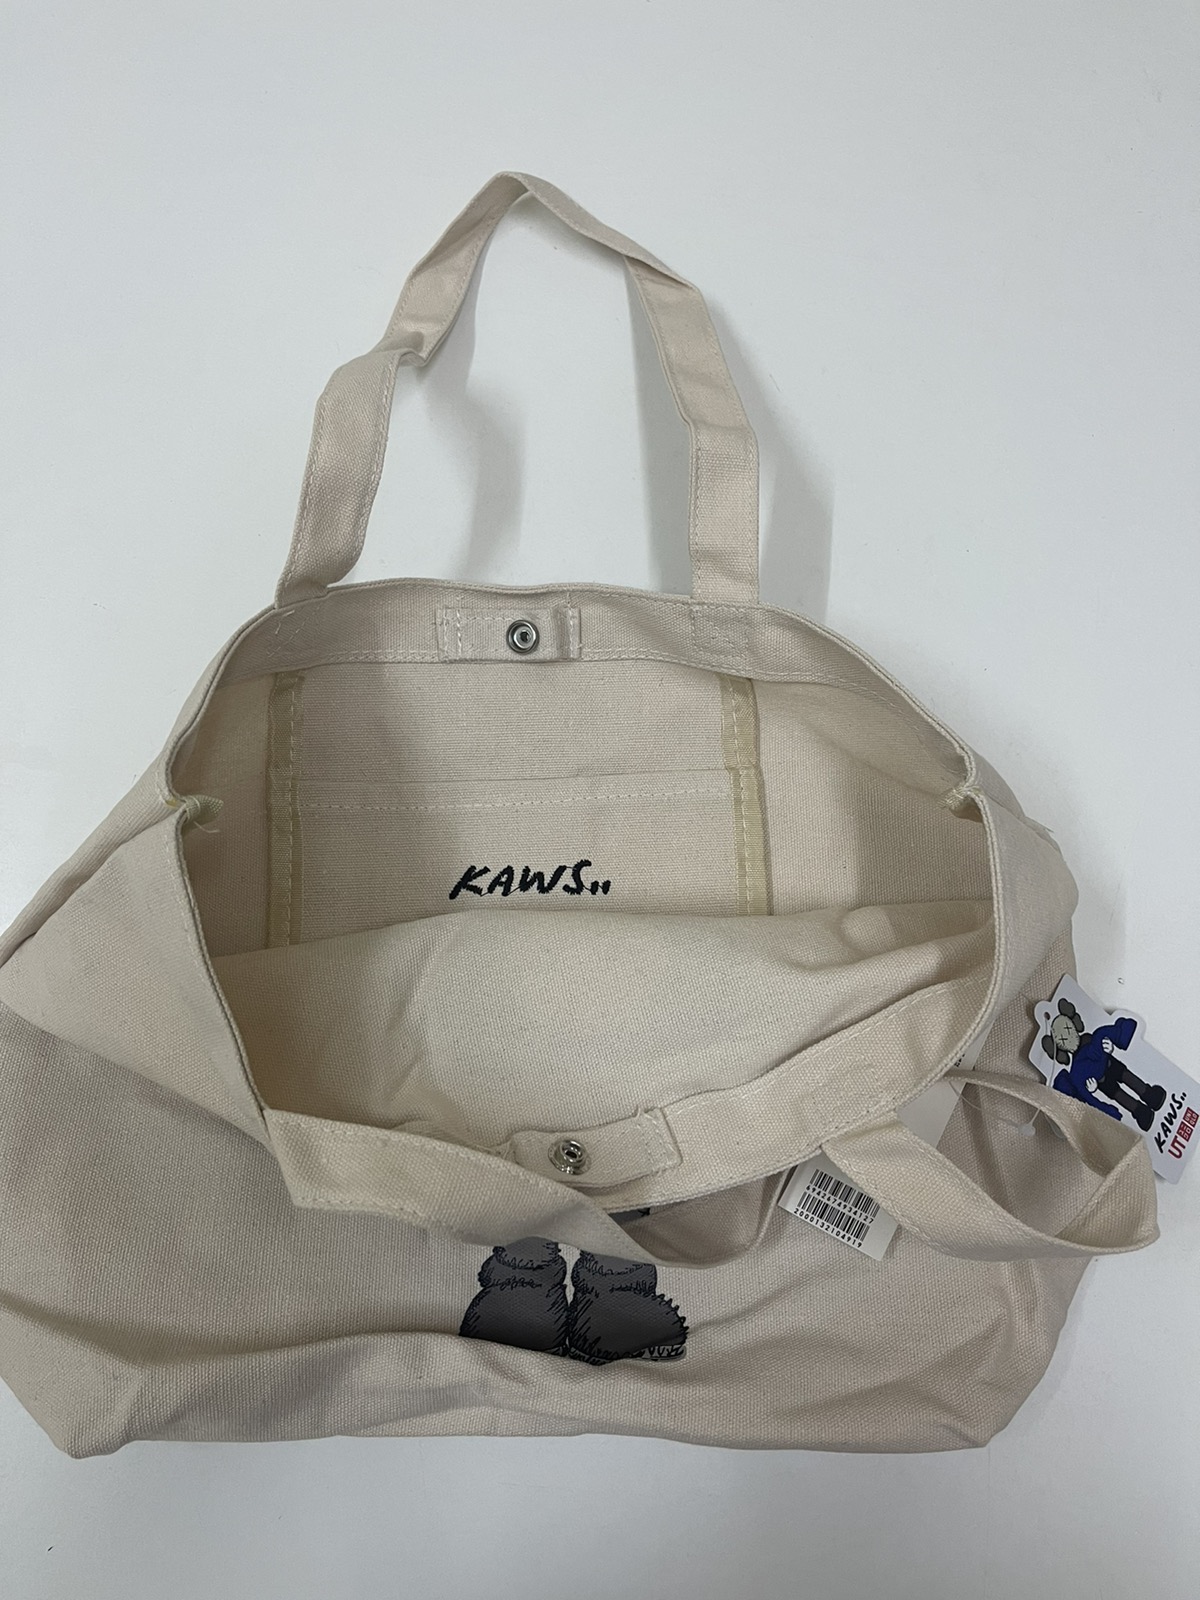 Kaws - Kaws Tote Bag Limited Edition / Uniqlo / Evangelion - 7